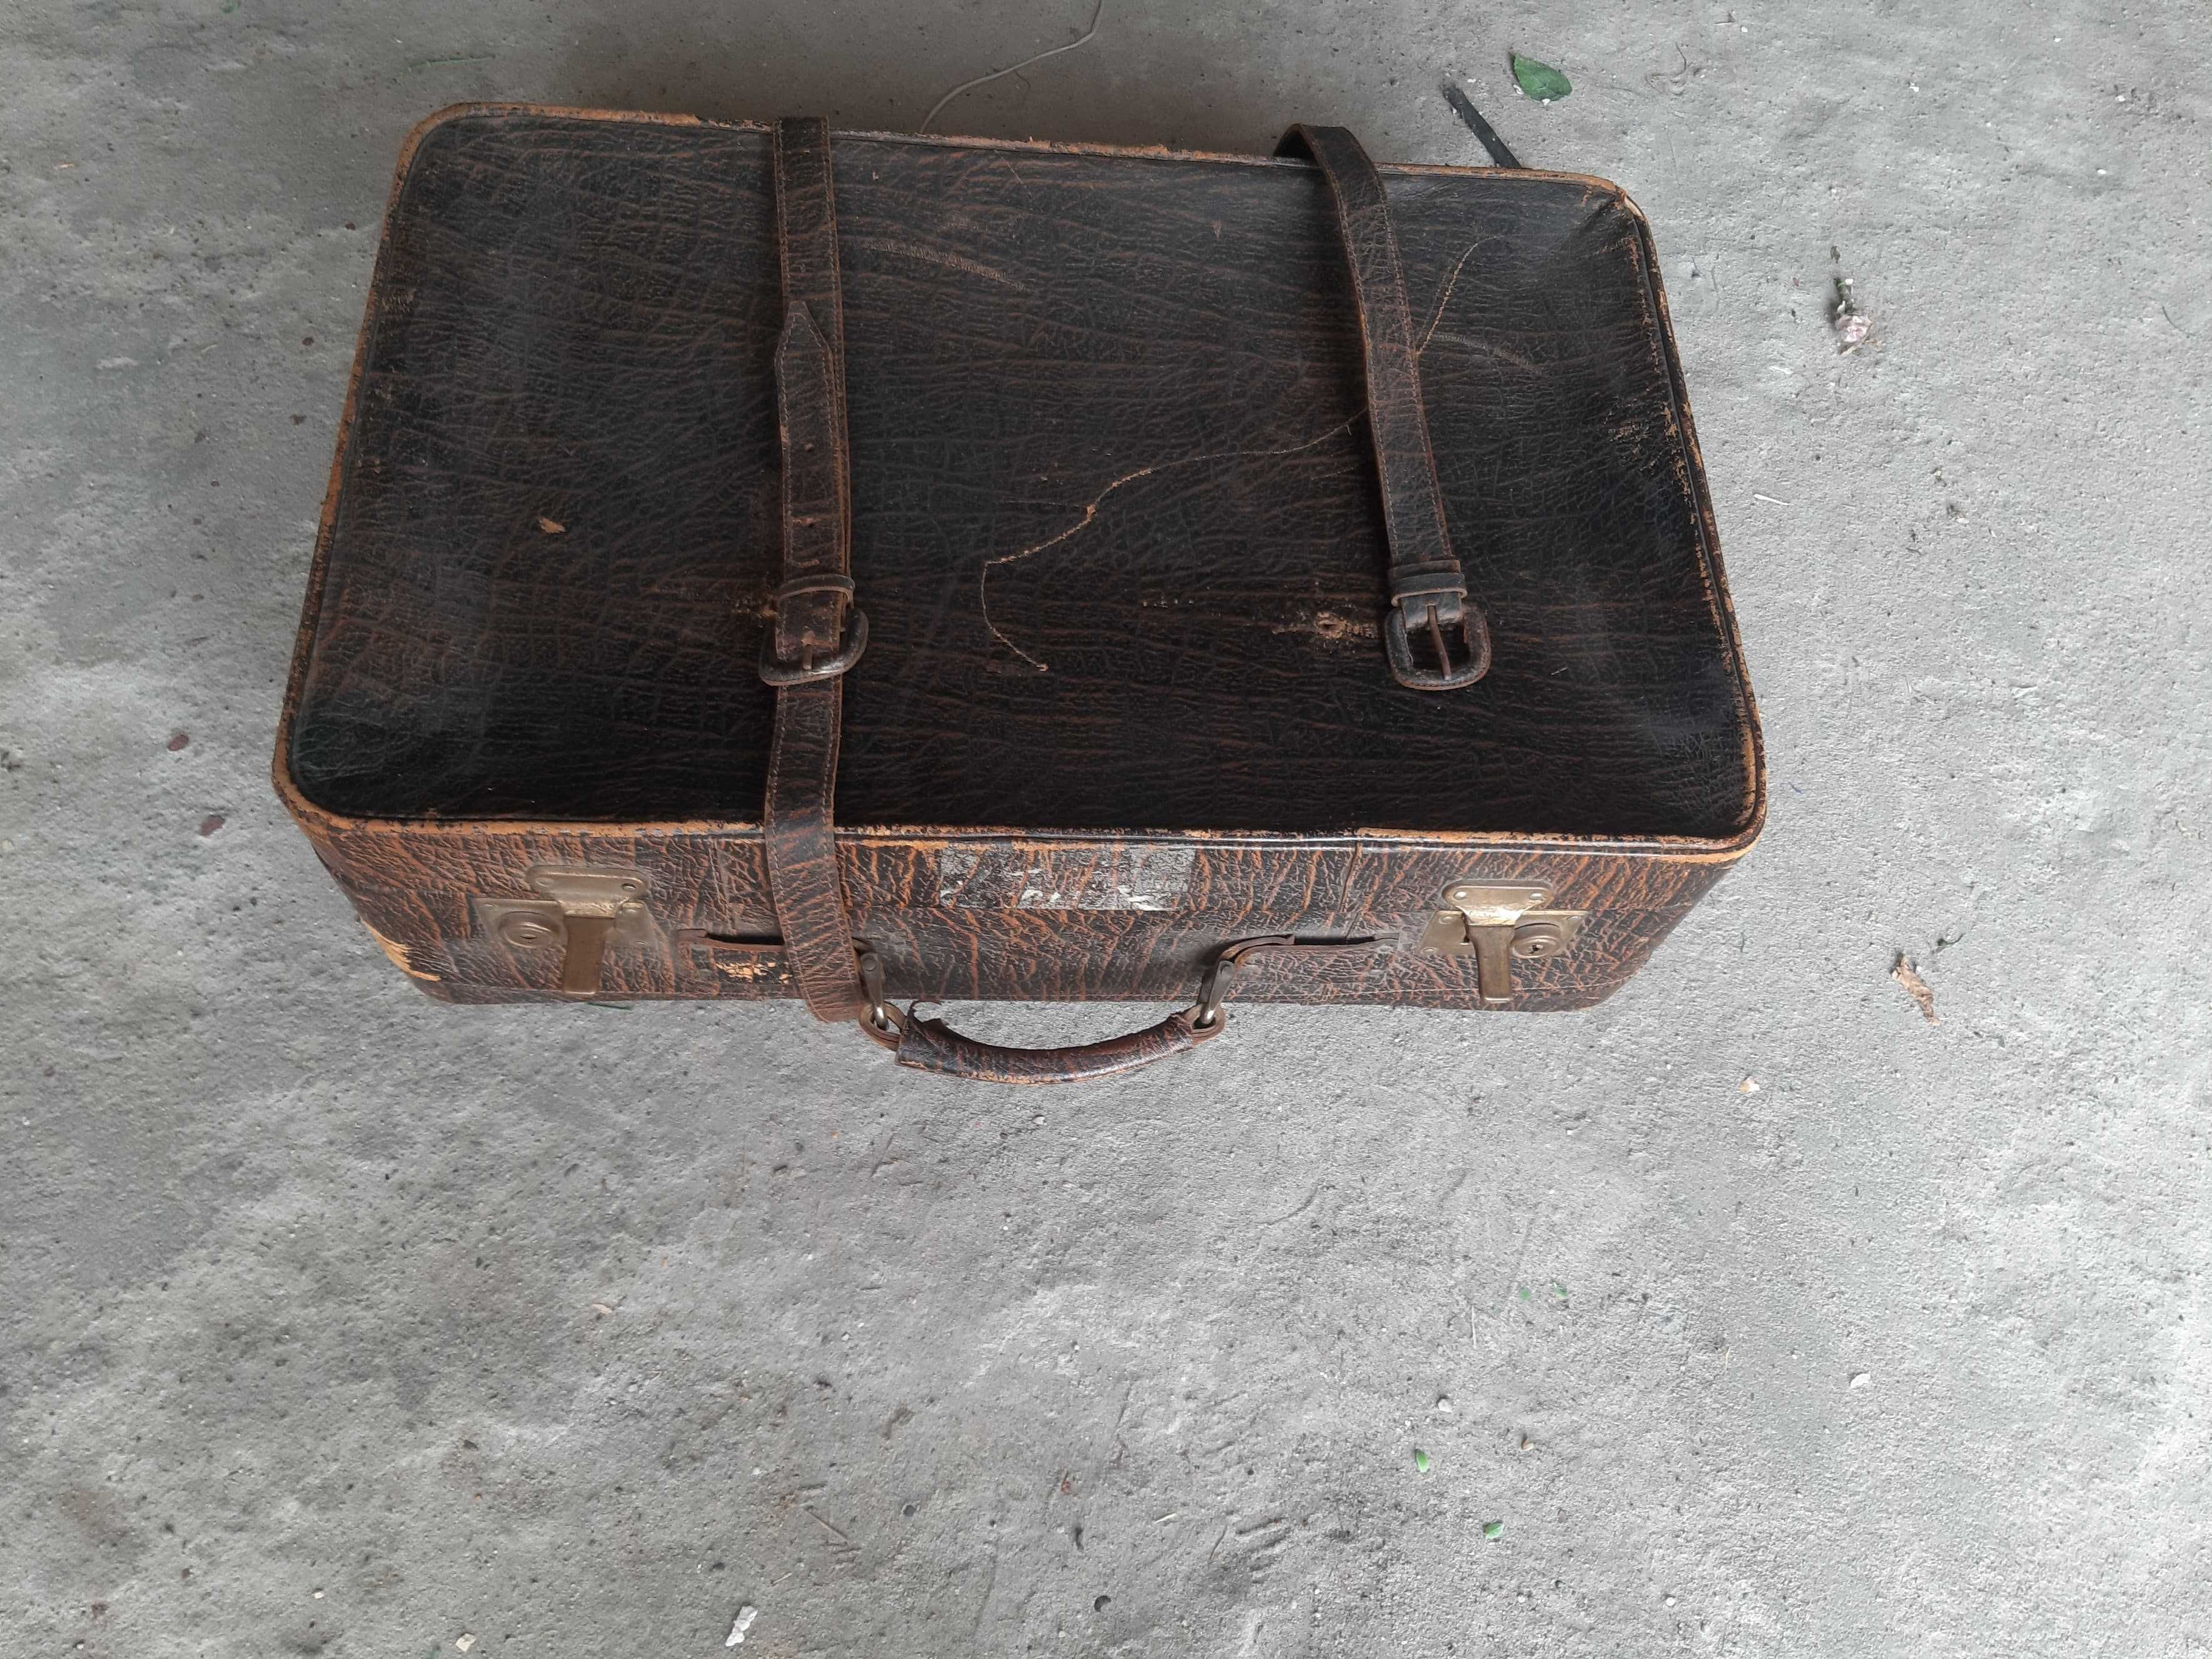 walizka stara z strychu prababci wymiar 60 cm X 40 cm X 9 cm